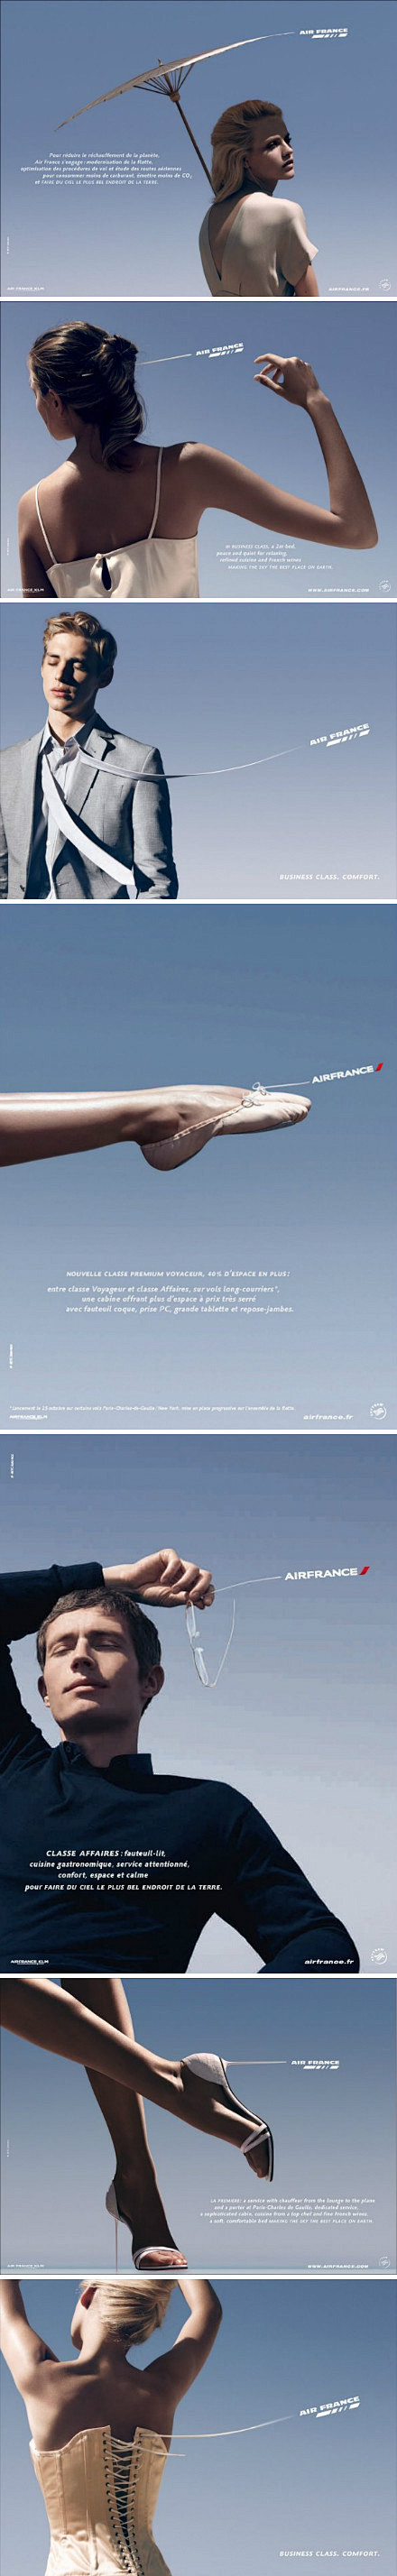 法国航空的广告创意